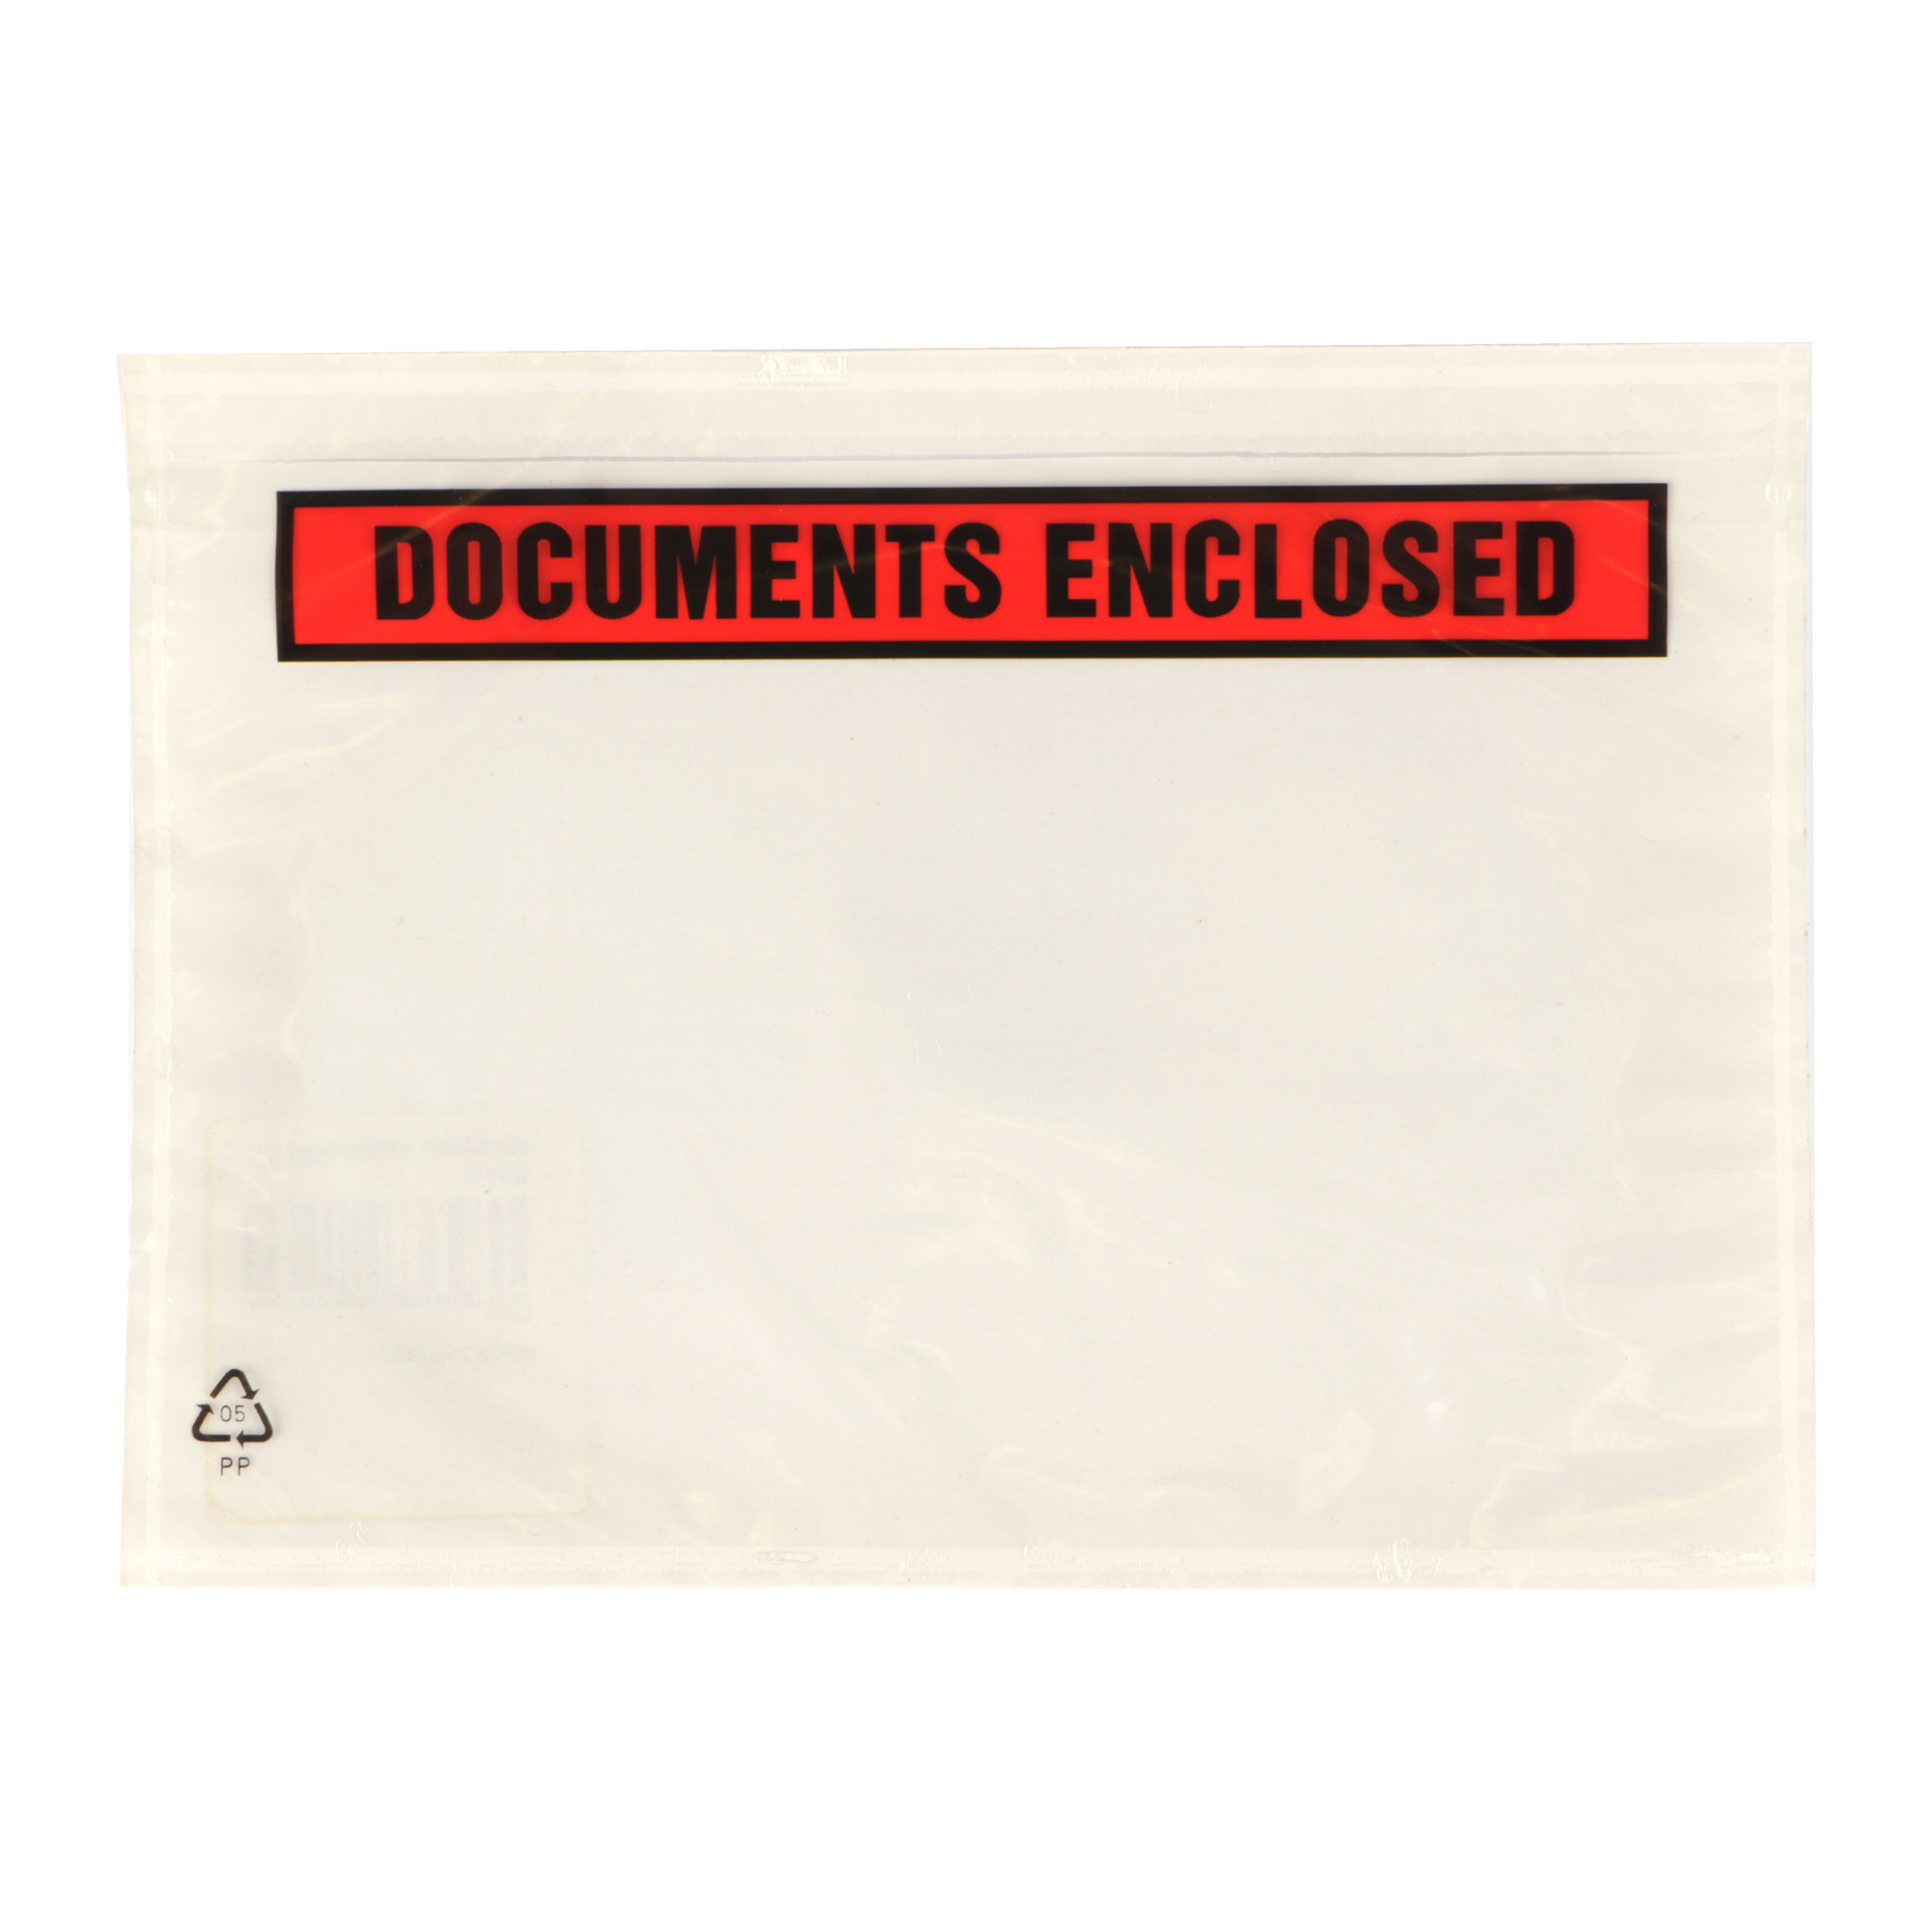 Afbeelding van Ds à 1000 PP paklijst envelop 22x16 cm documents enclosed (uc) 